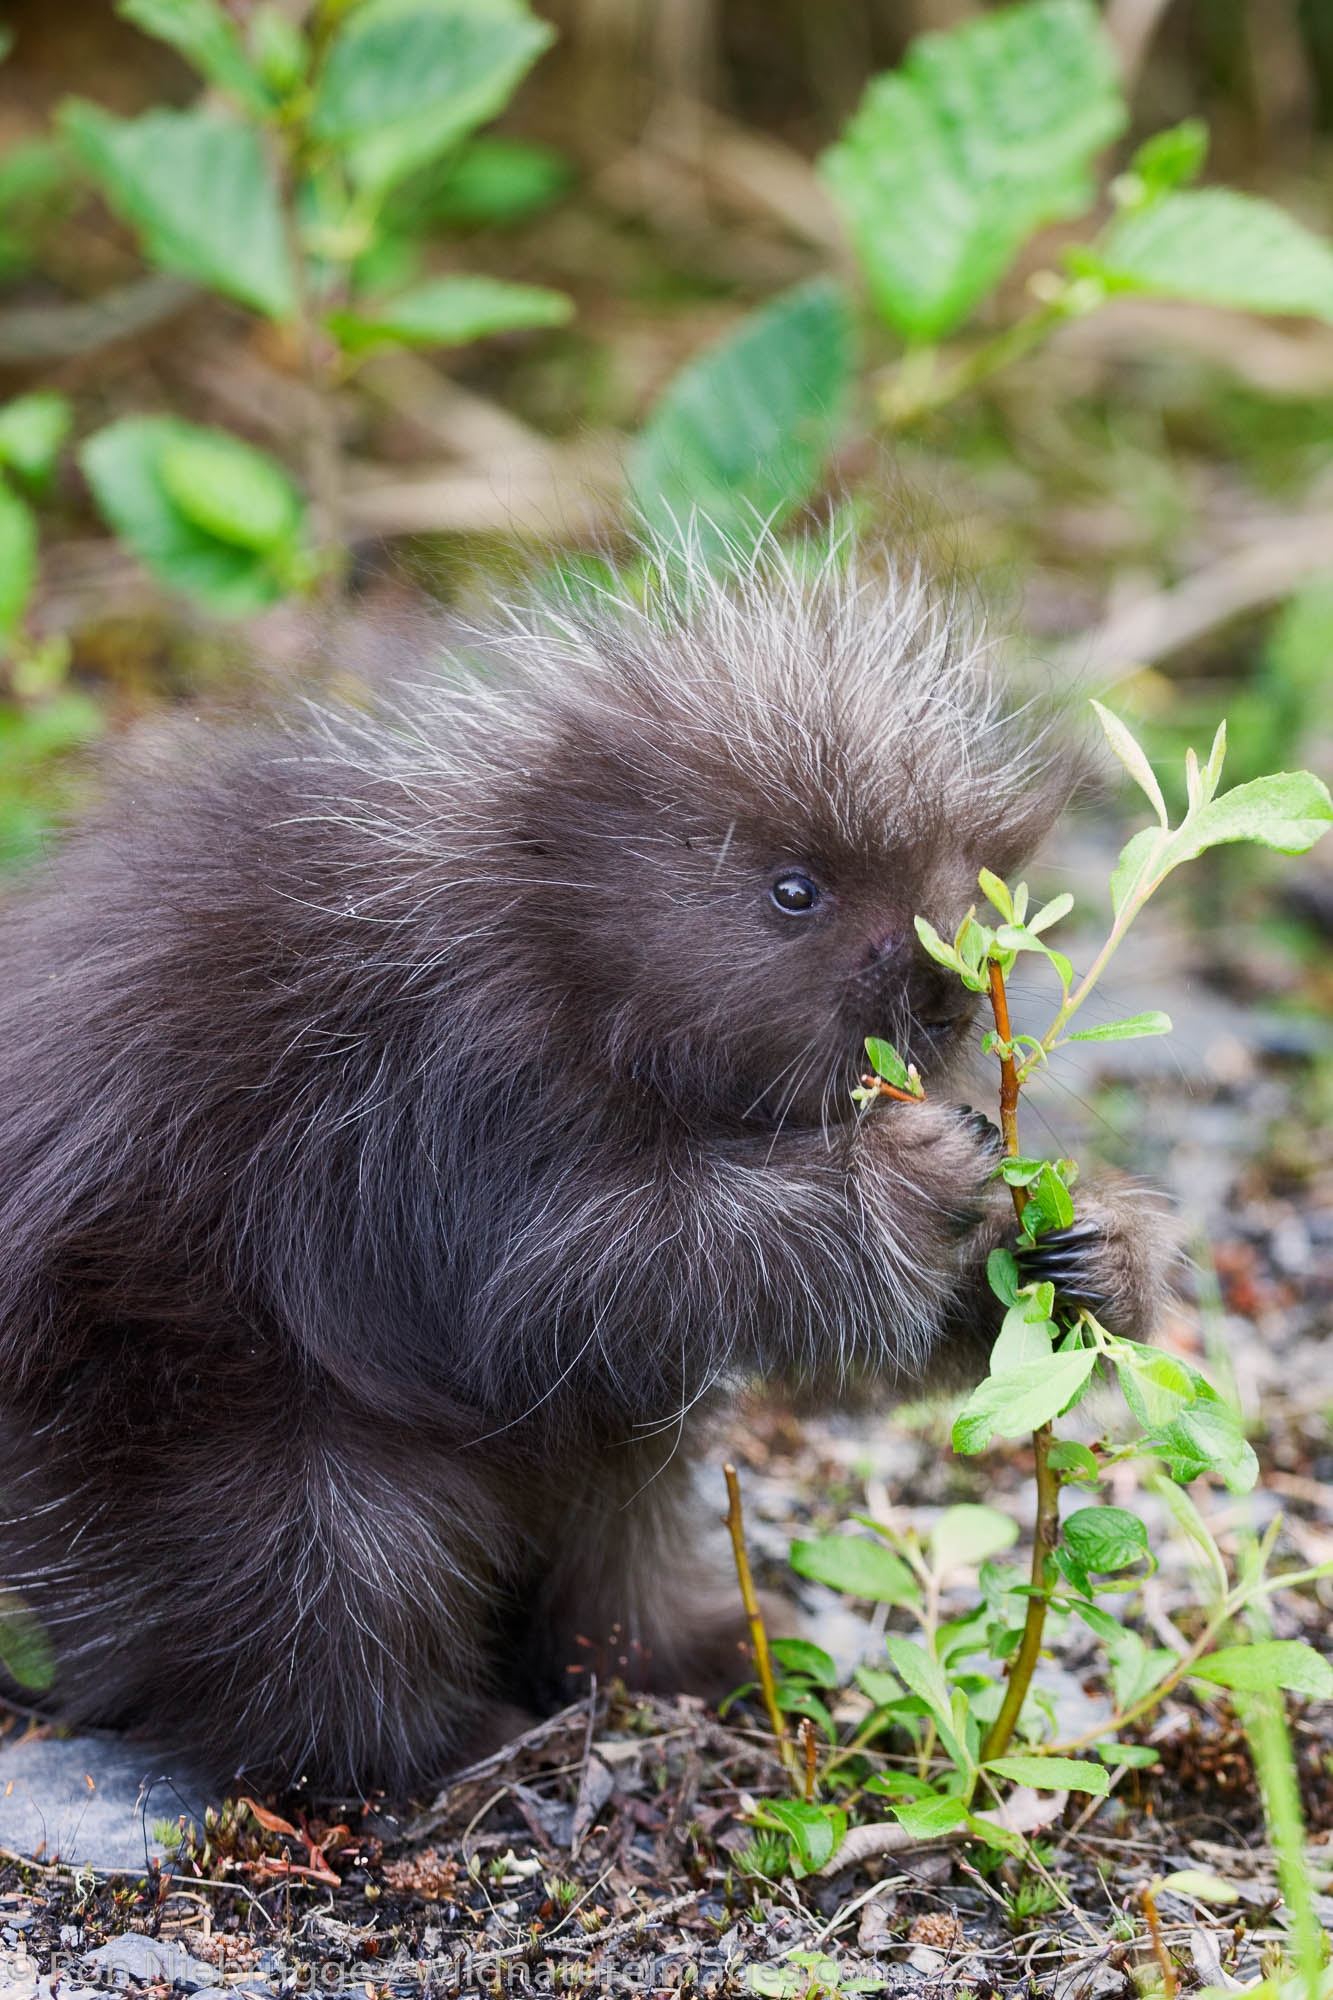 A baby porcupine, near Seward, Alaska.